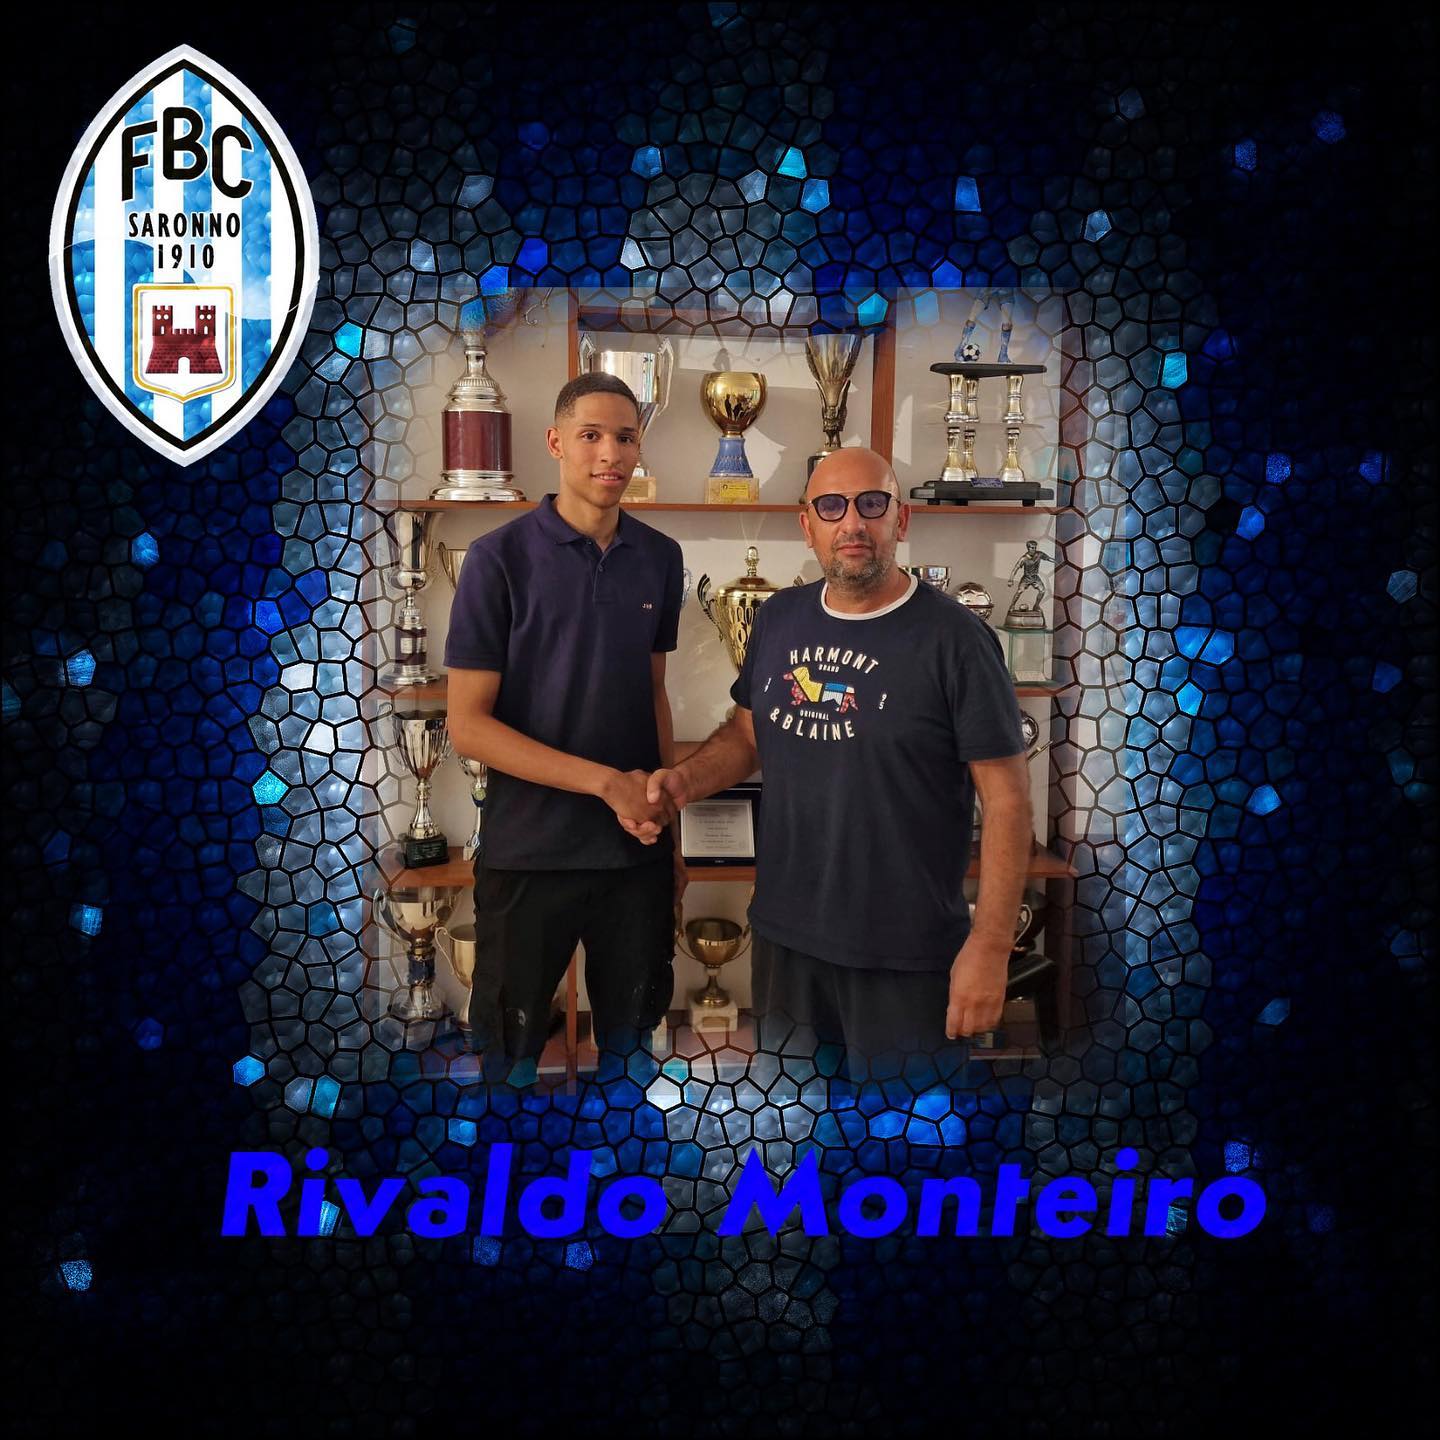 Calcio mercato: Rivaldo Monteiro nuovo portiere del Fbc Saronno